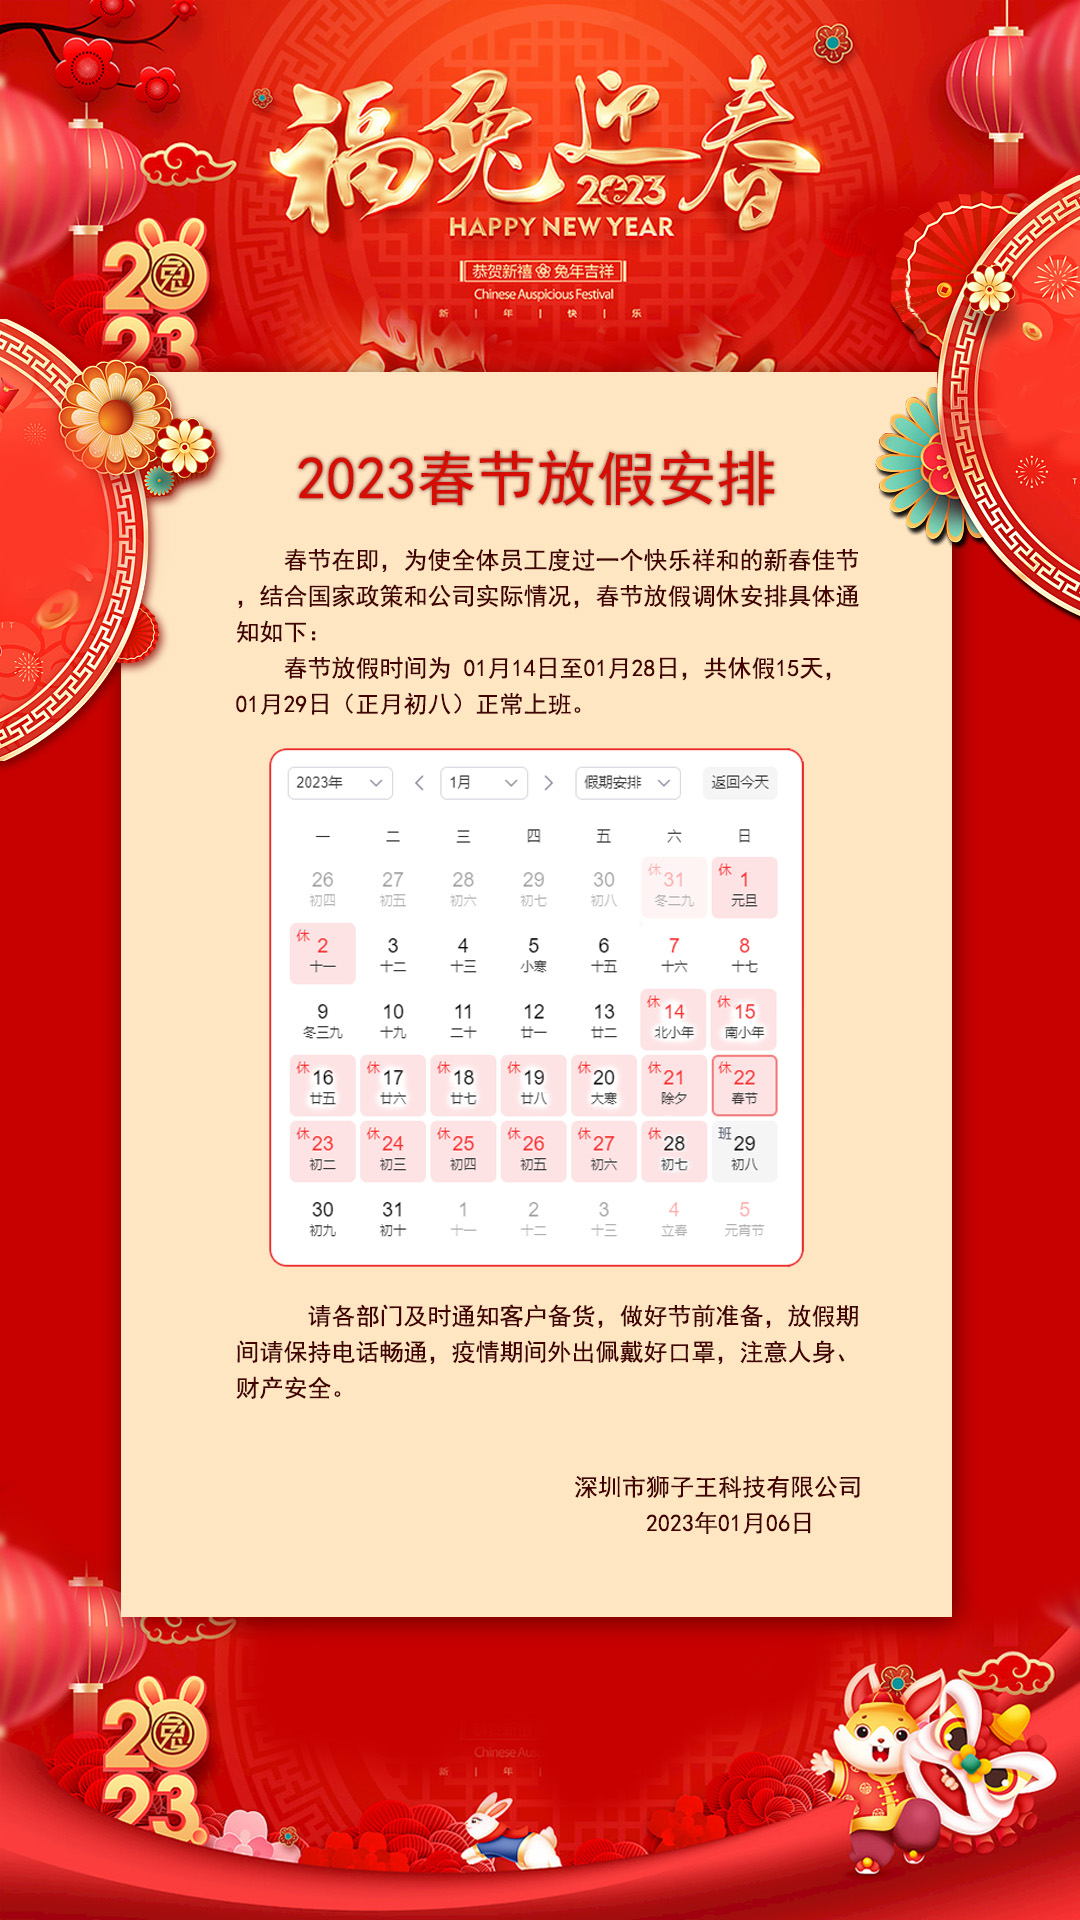 <b>狮子王2023年春节放假安排</b>